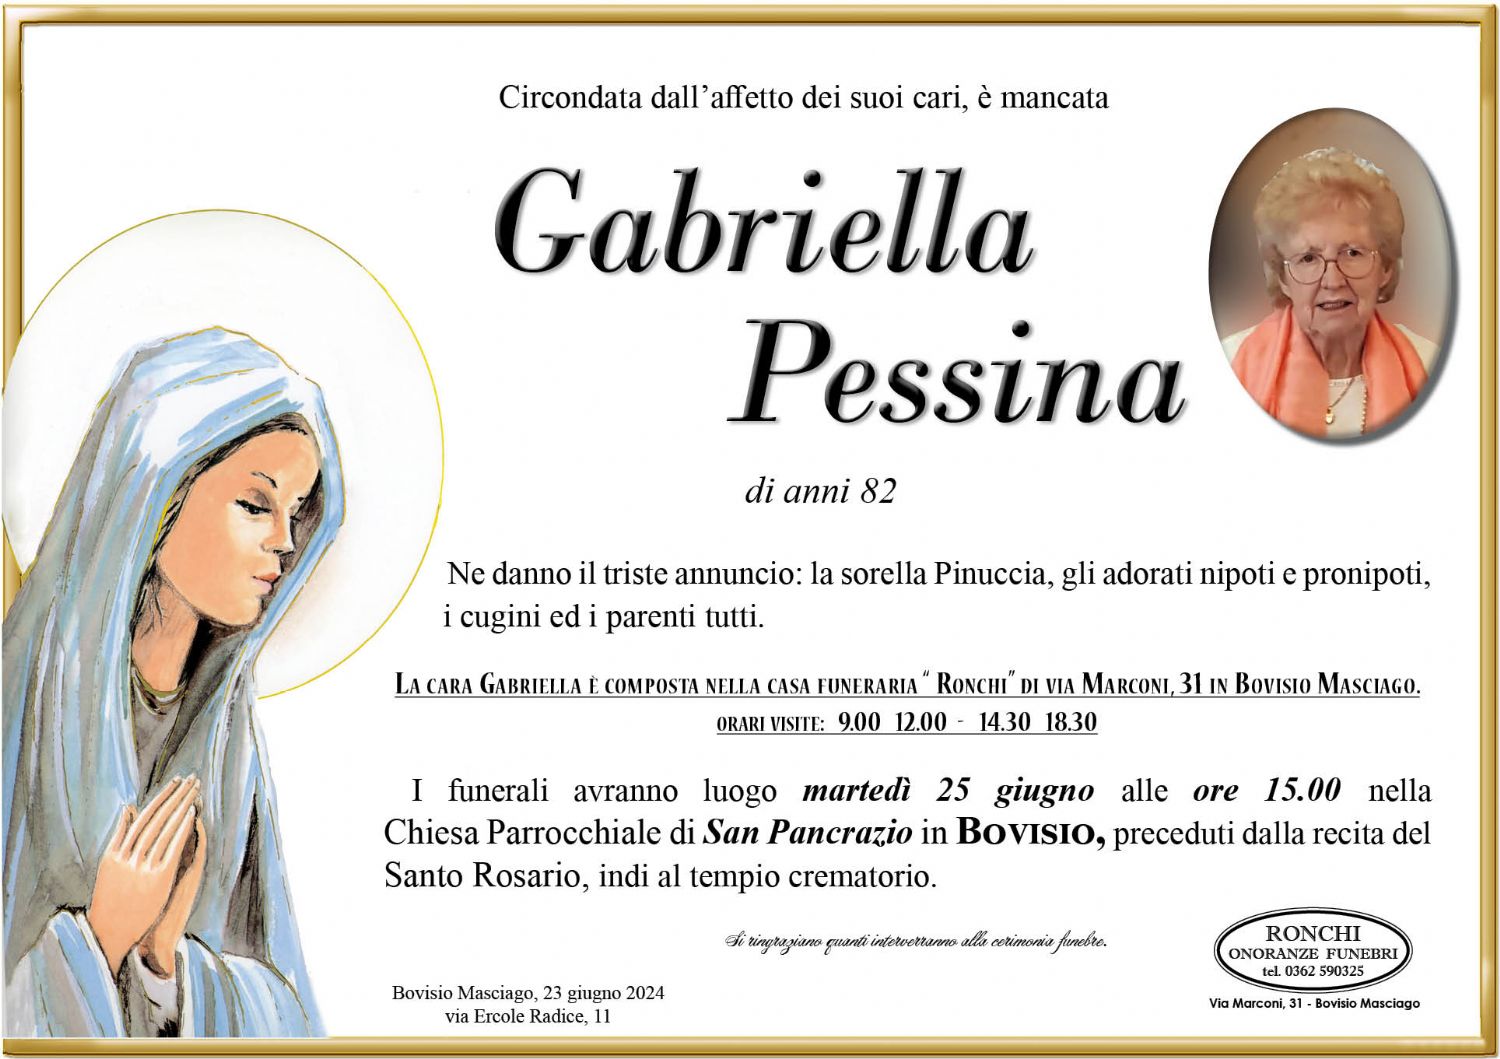 Gabriella Pessina